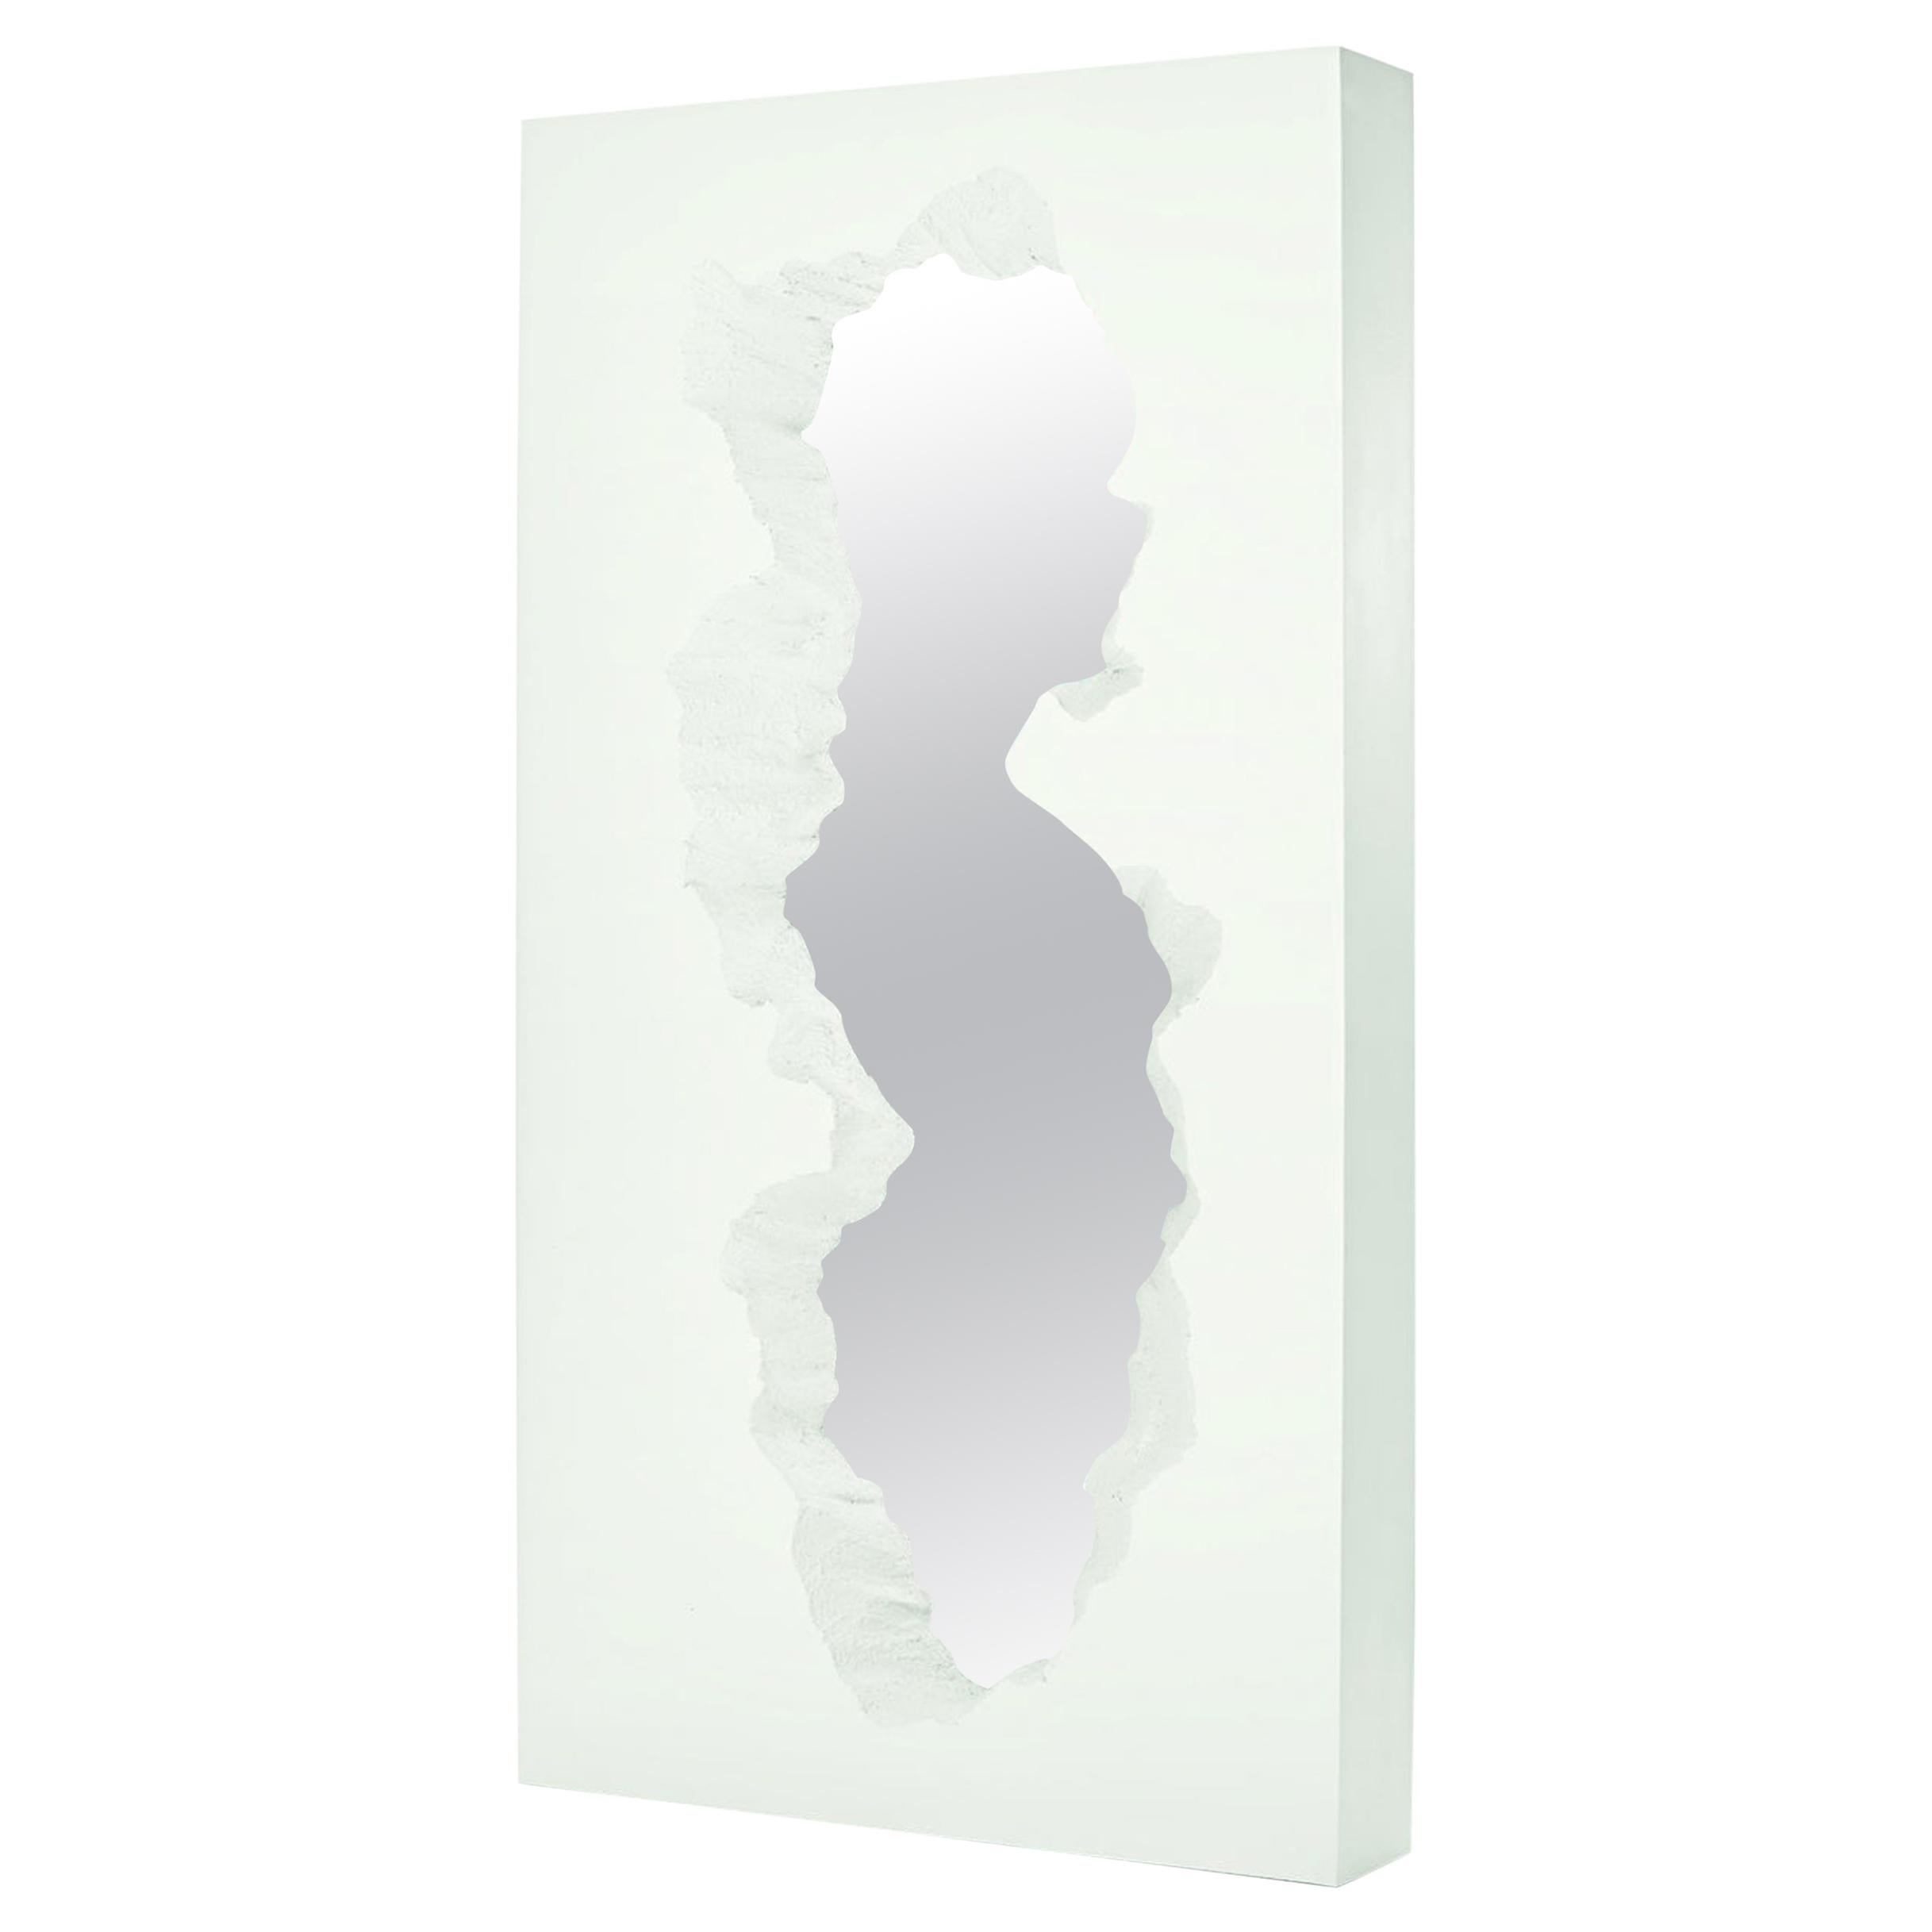 Gufram Broken Mirror White by Snarkitecture, Limited Edition of 77